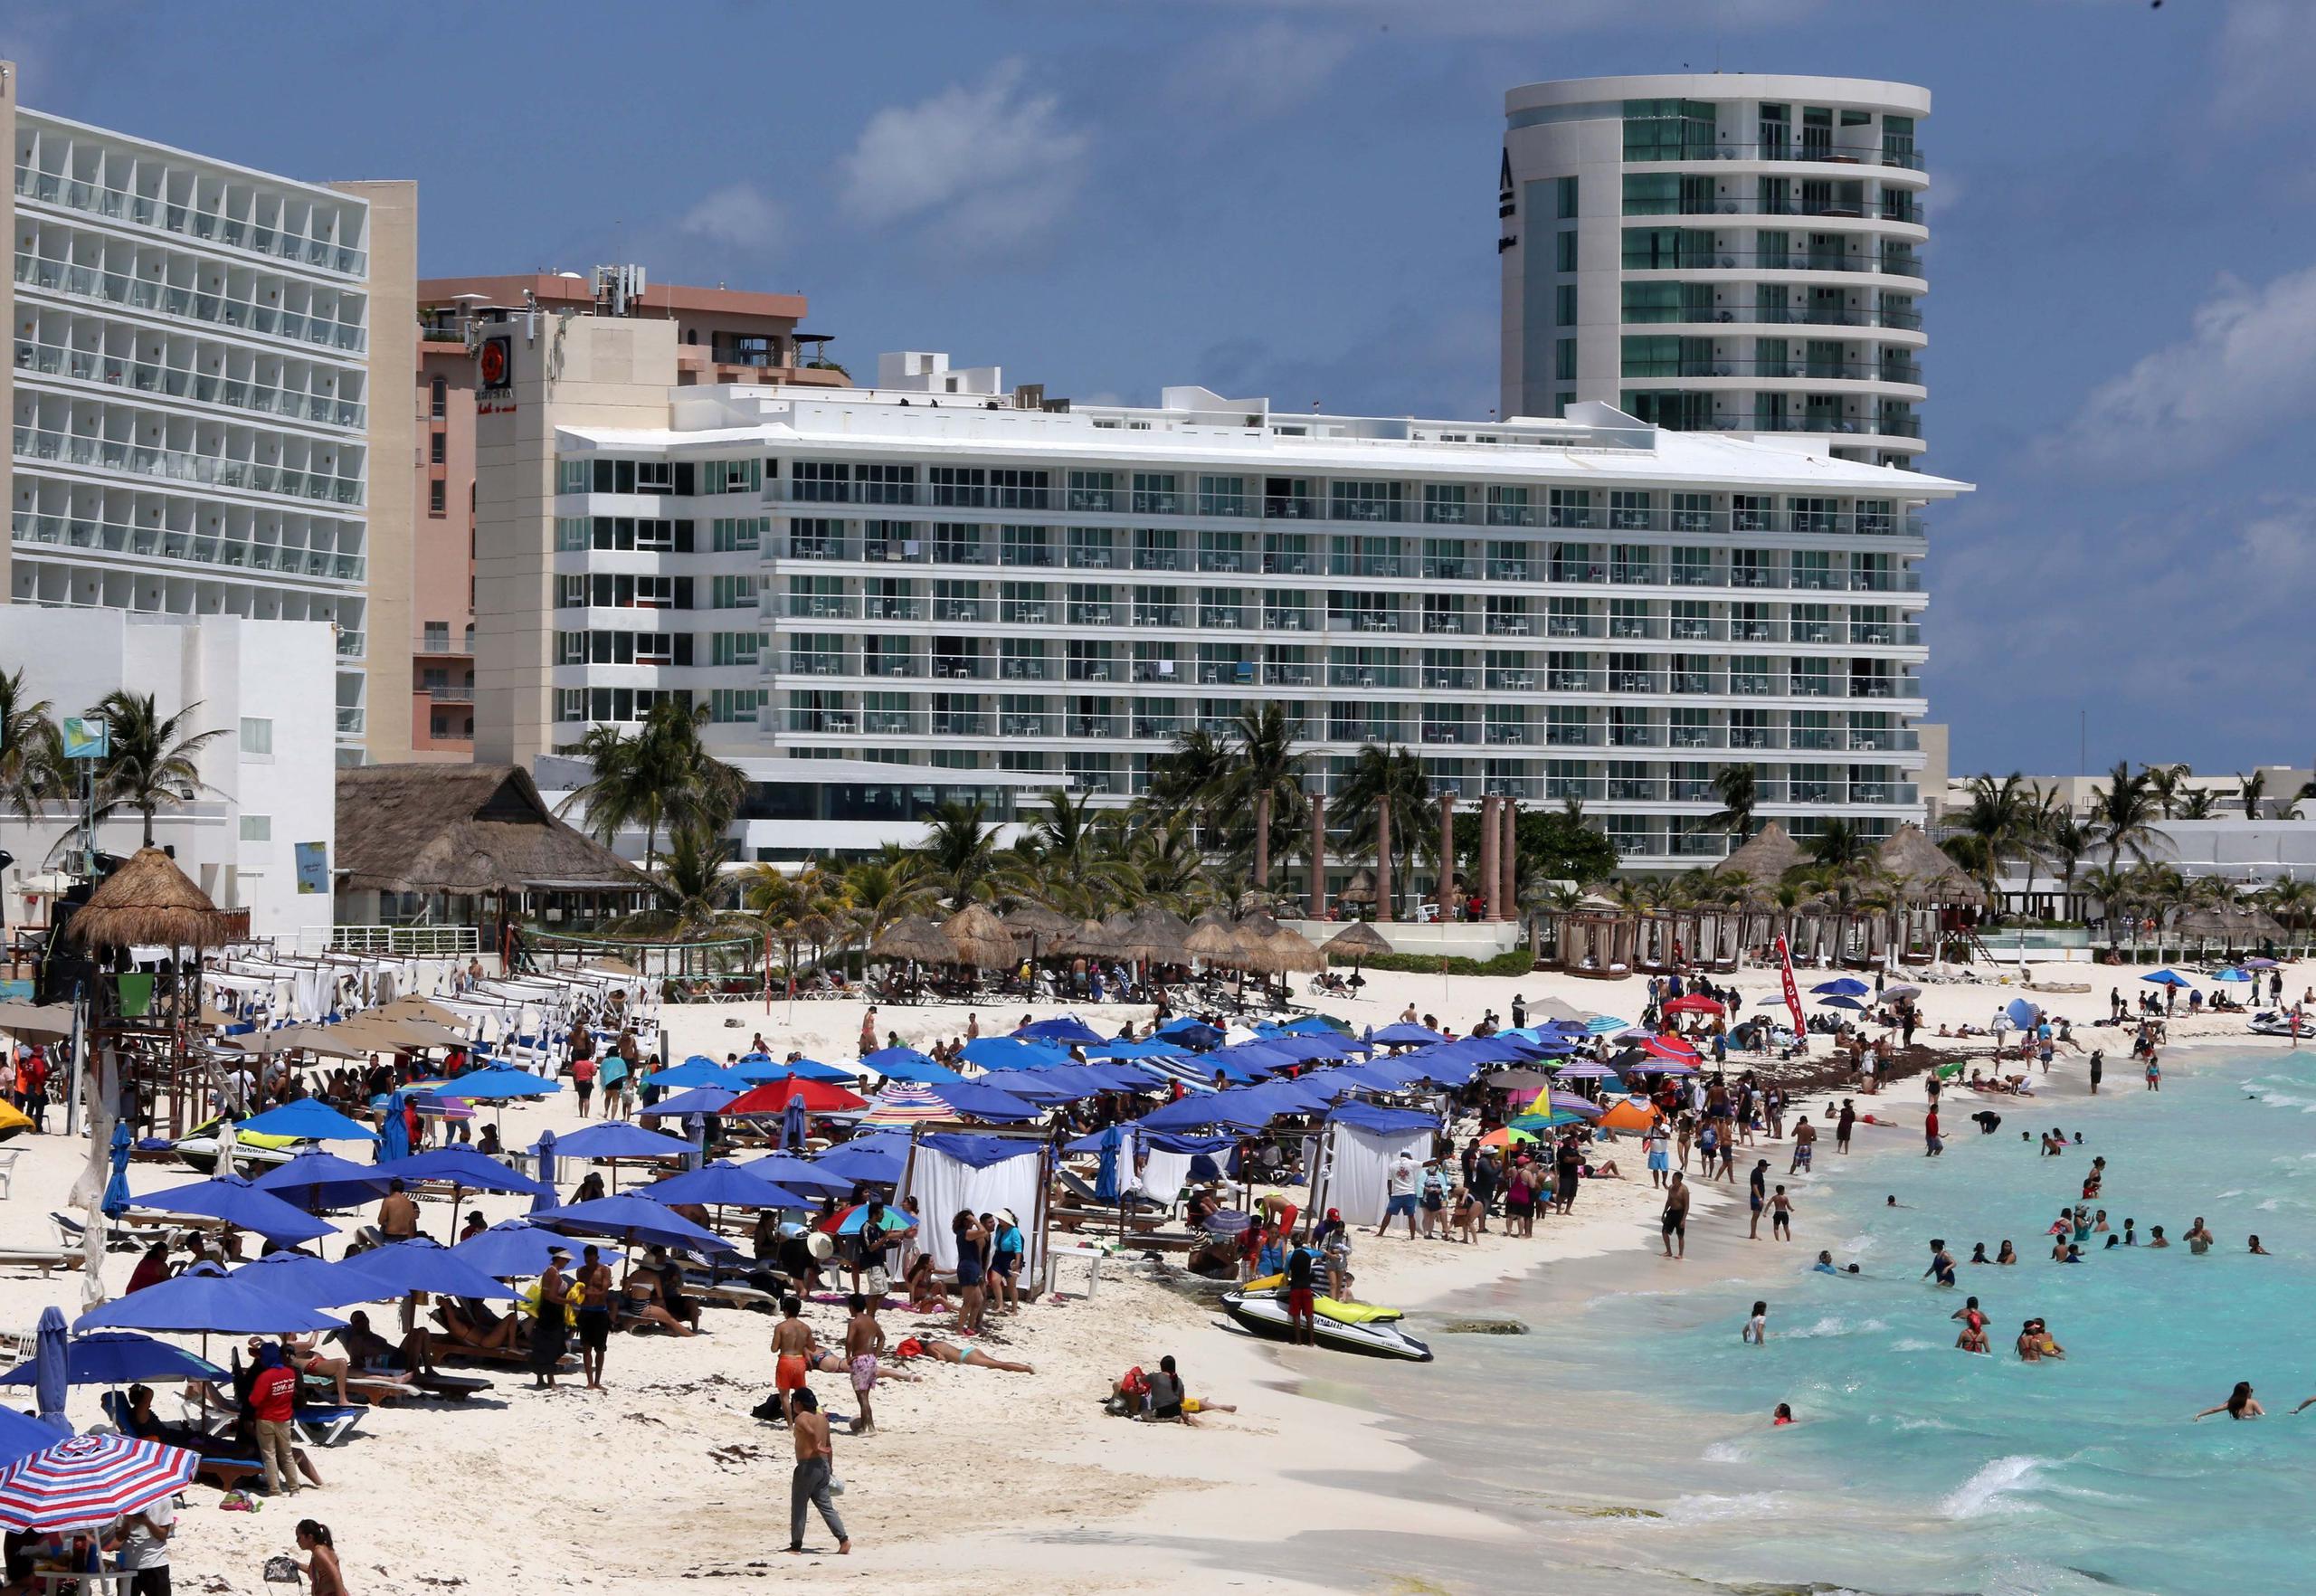 La red criminal se expandió del Caribe mexicano a otros destinos turísticos del Pacífico, como Los Cabos, la Riviera Nayarita o Puerto Vallarta.